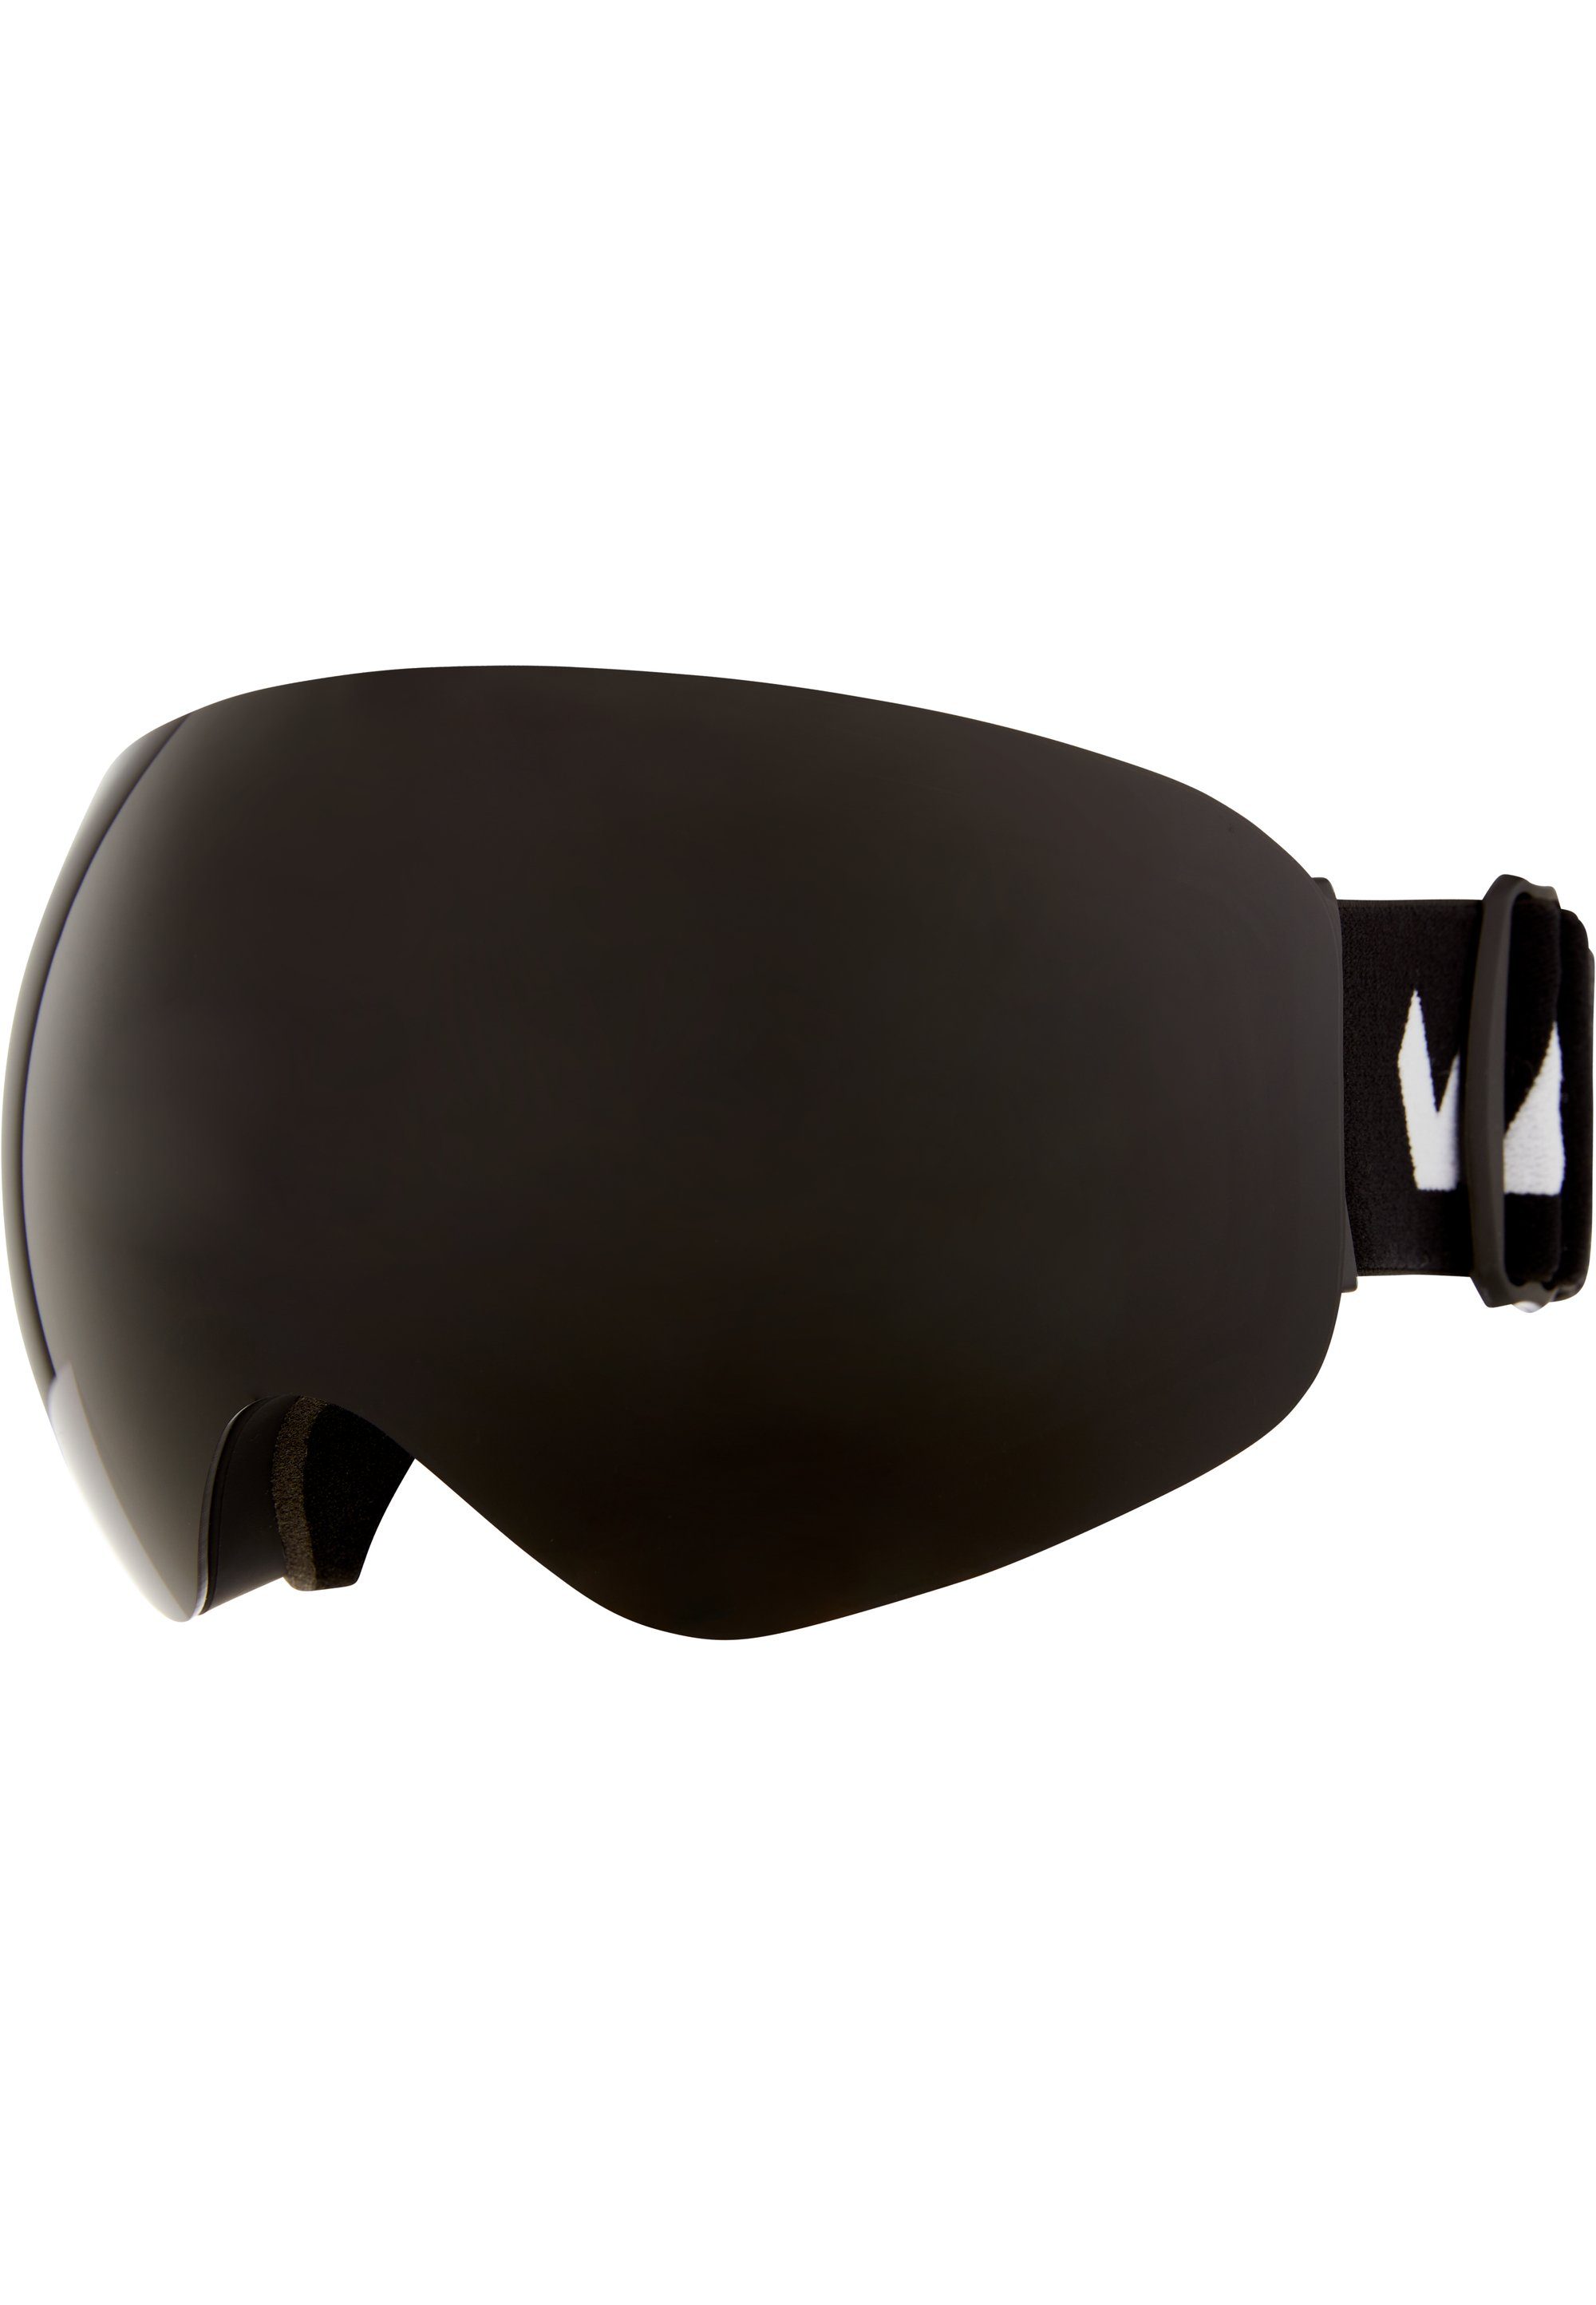 WHISTLER Skibrille Anti-Fog-Beschichtung schwarz WS6100, mit praktischer